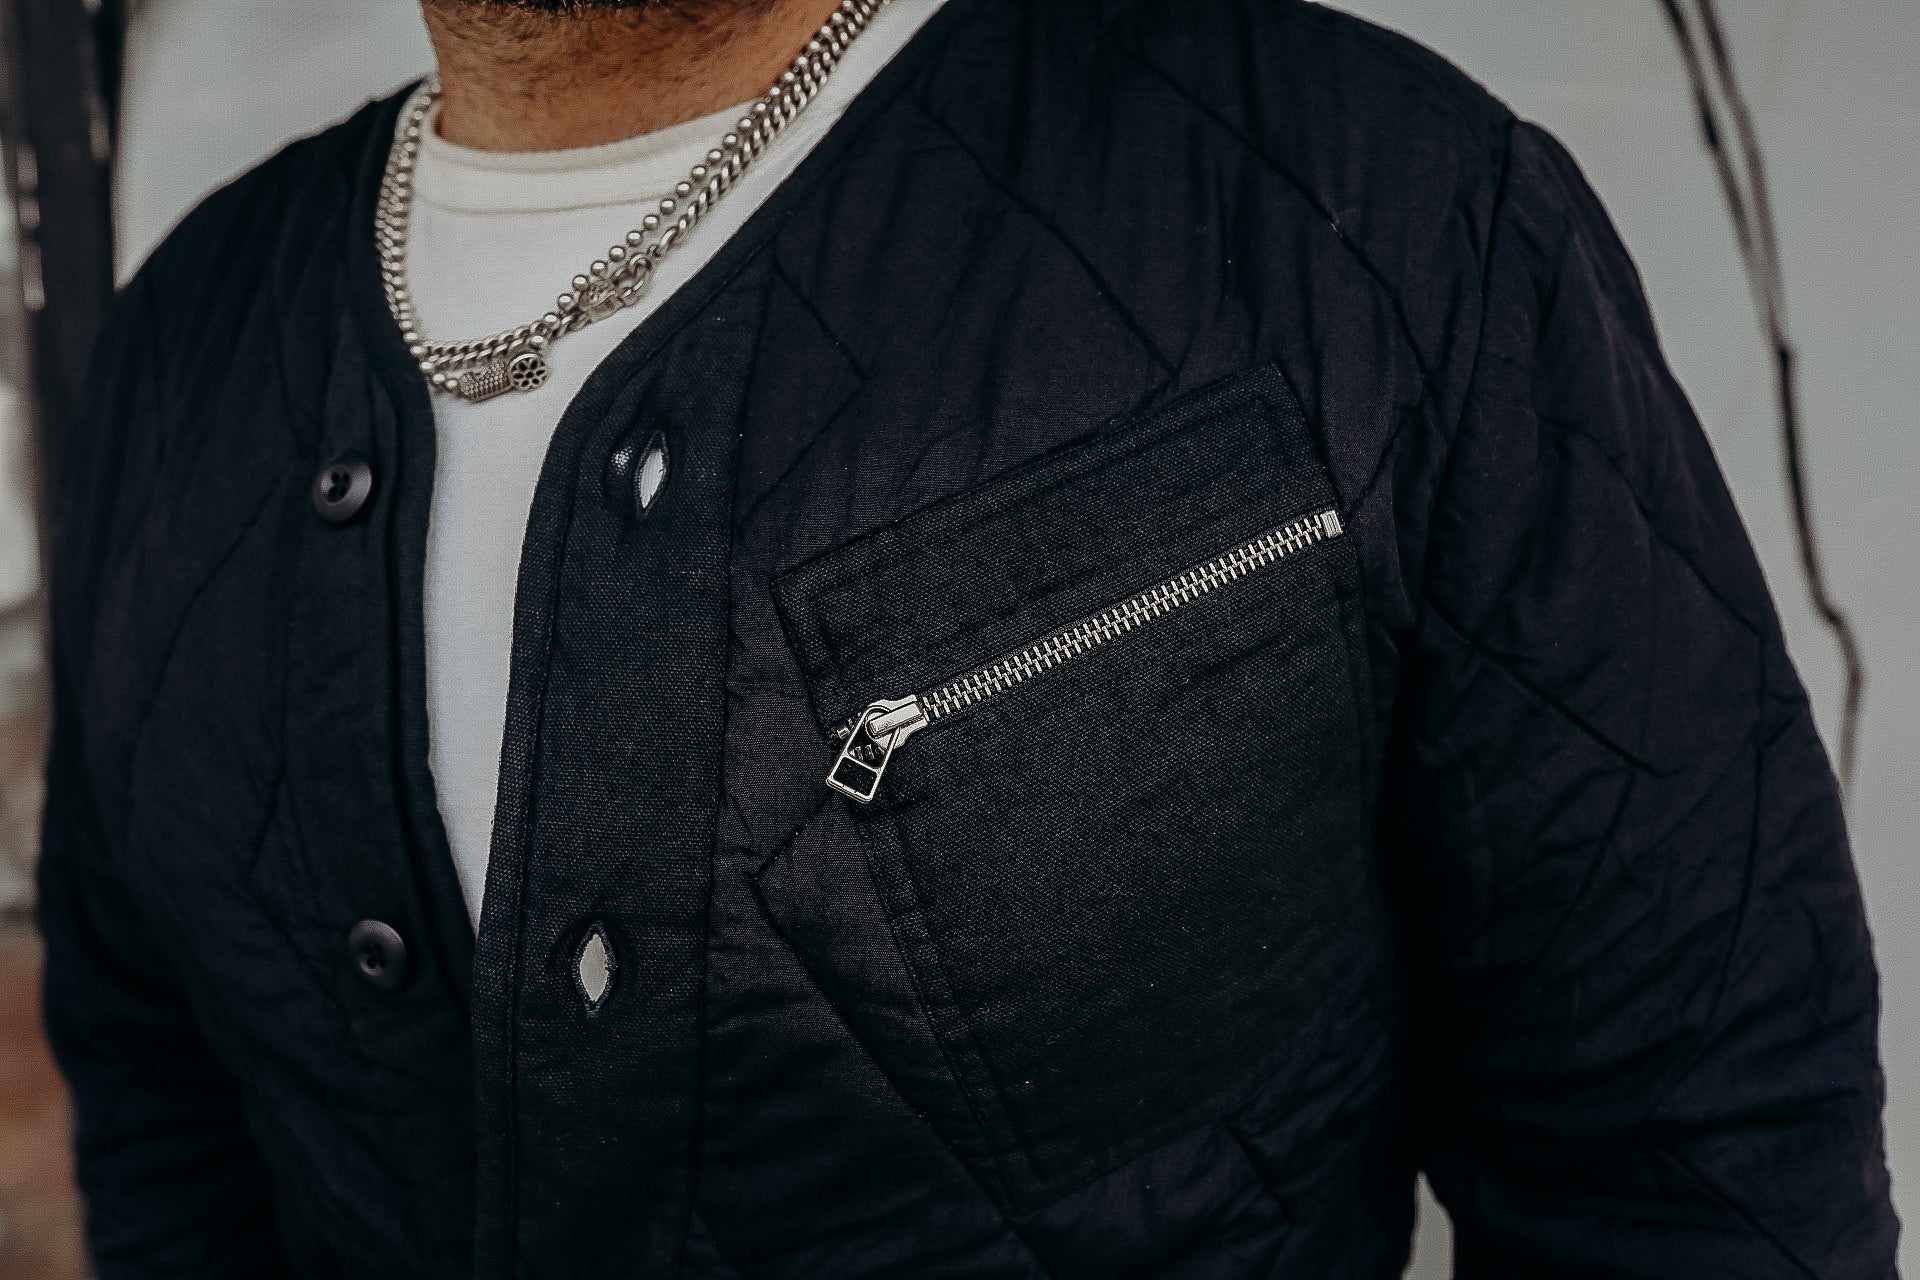 Liner Jacket Onyx Tencel